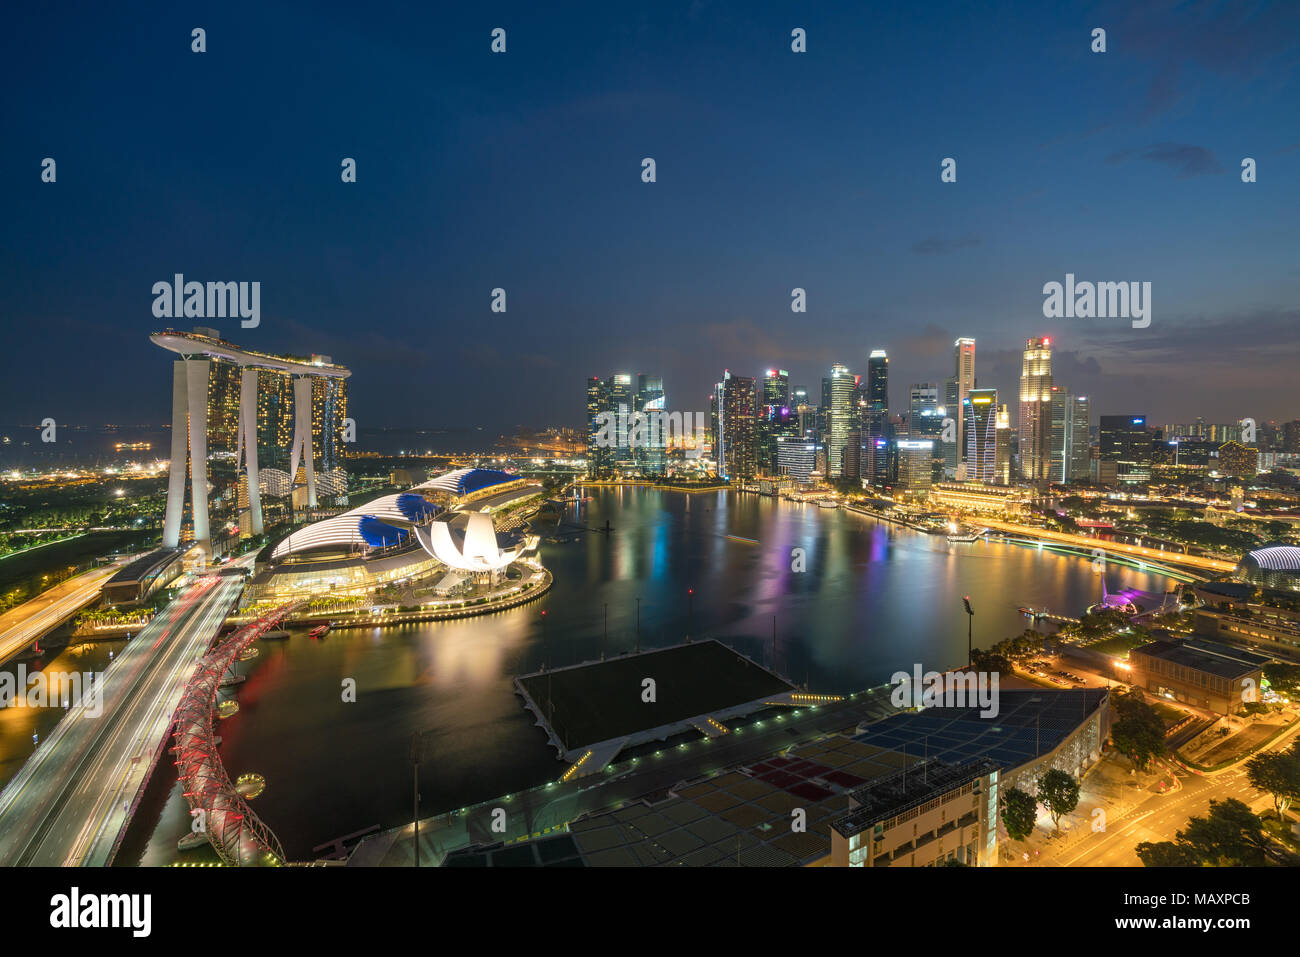 Panorama du quartier des affaires de Singapour Singapour skyline et gratte-ciel de nuit à Marina Bay, Singapour. Asie Banque D'Images